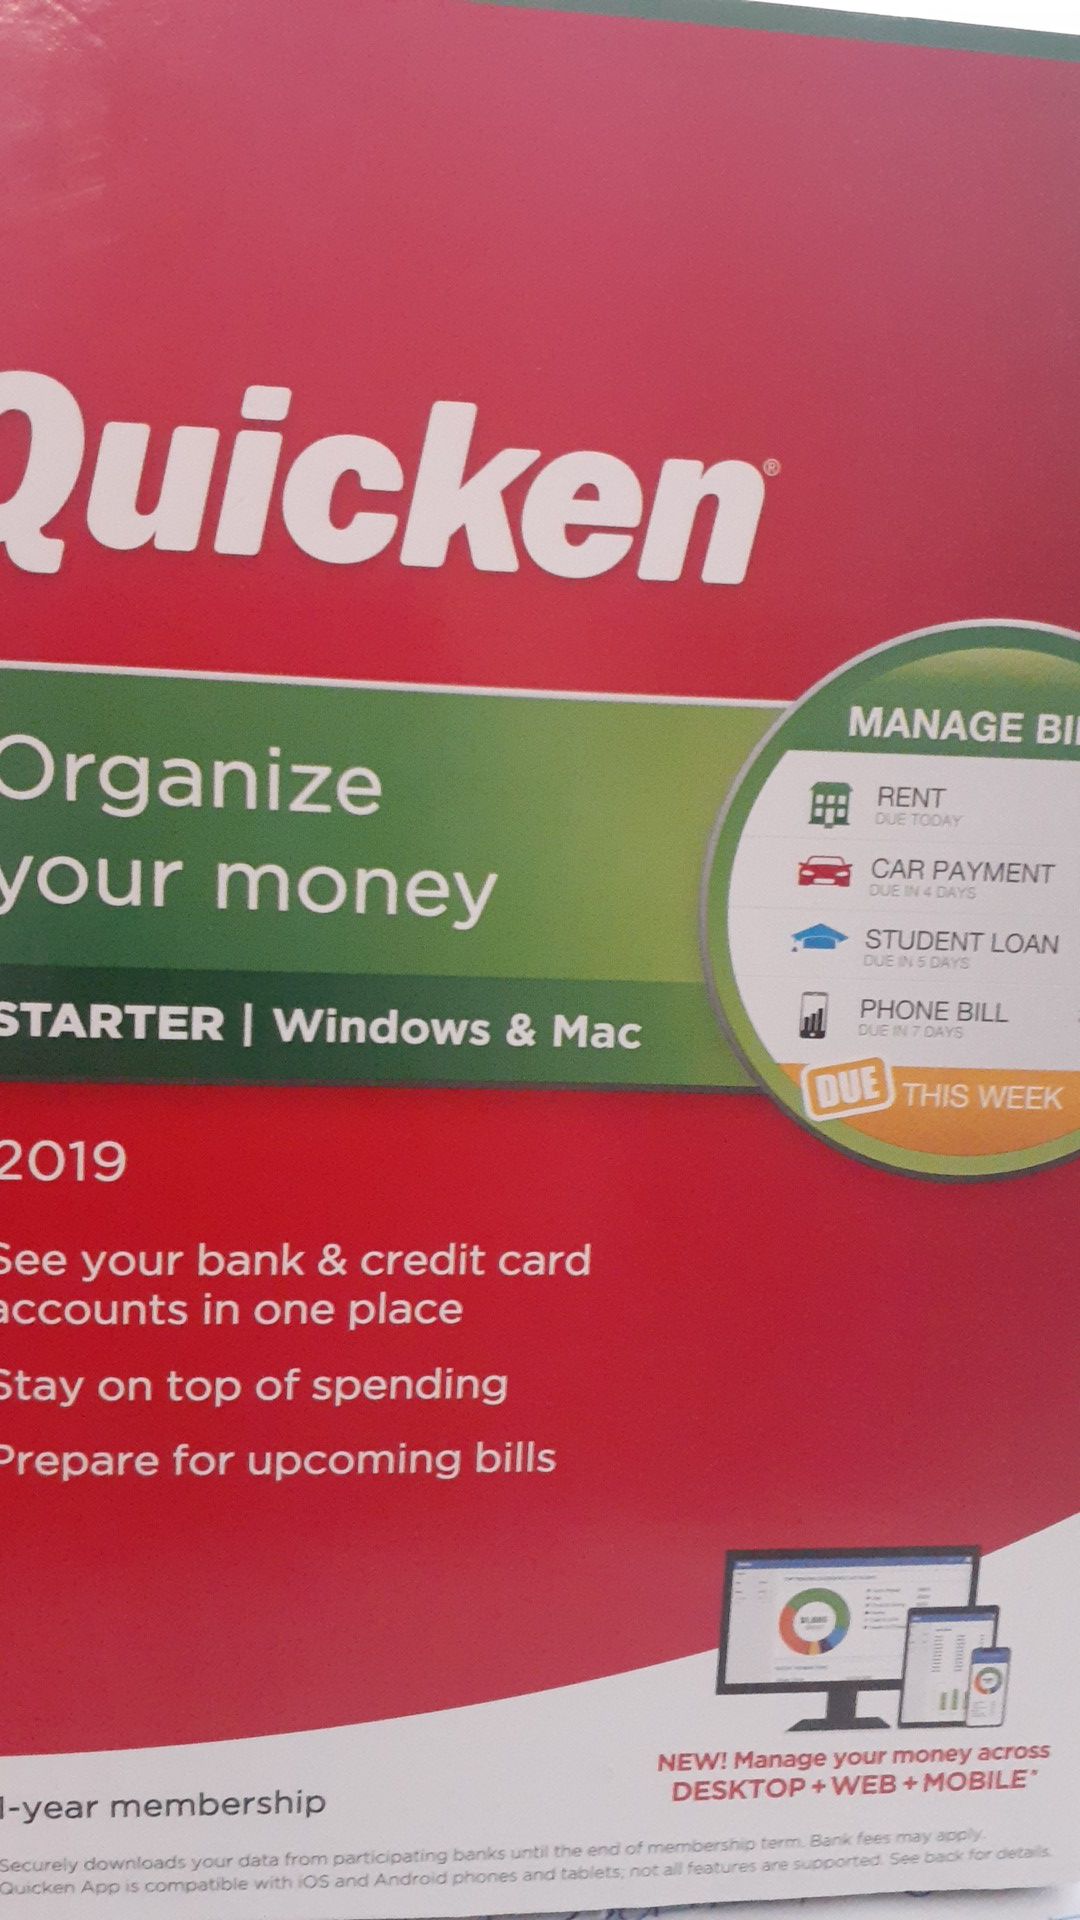 Quicken organize your money 2019